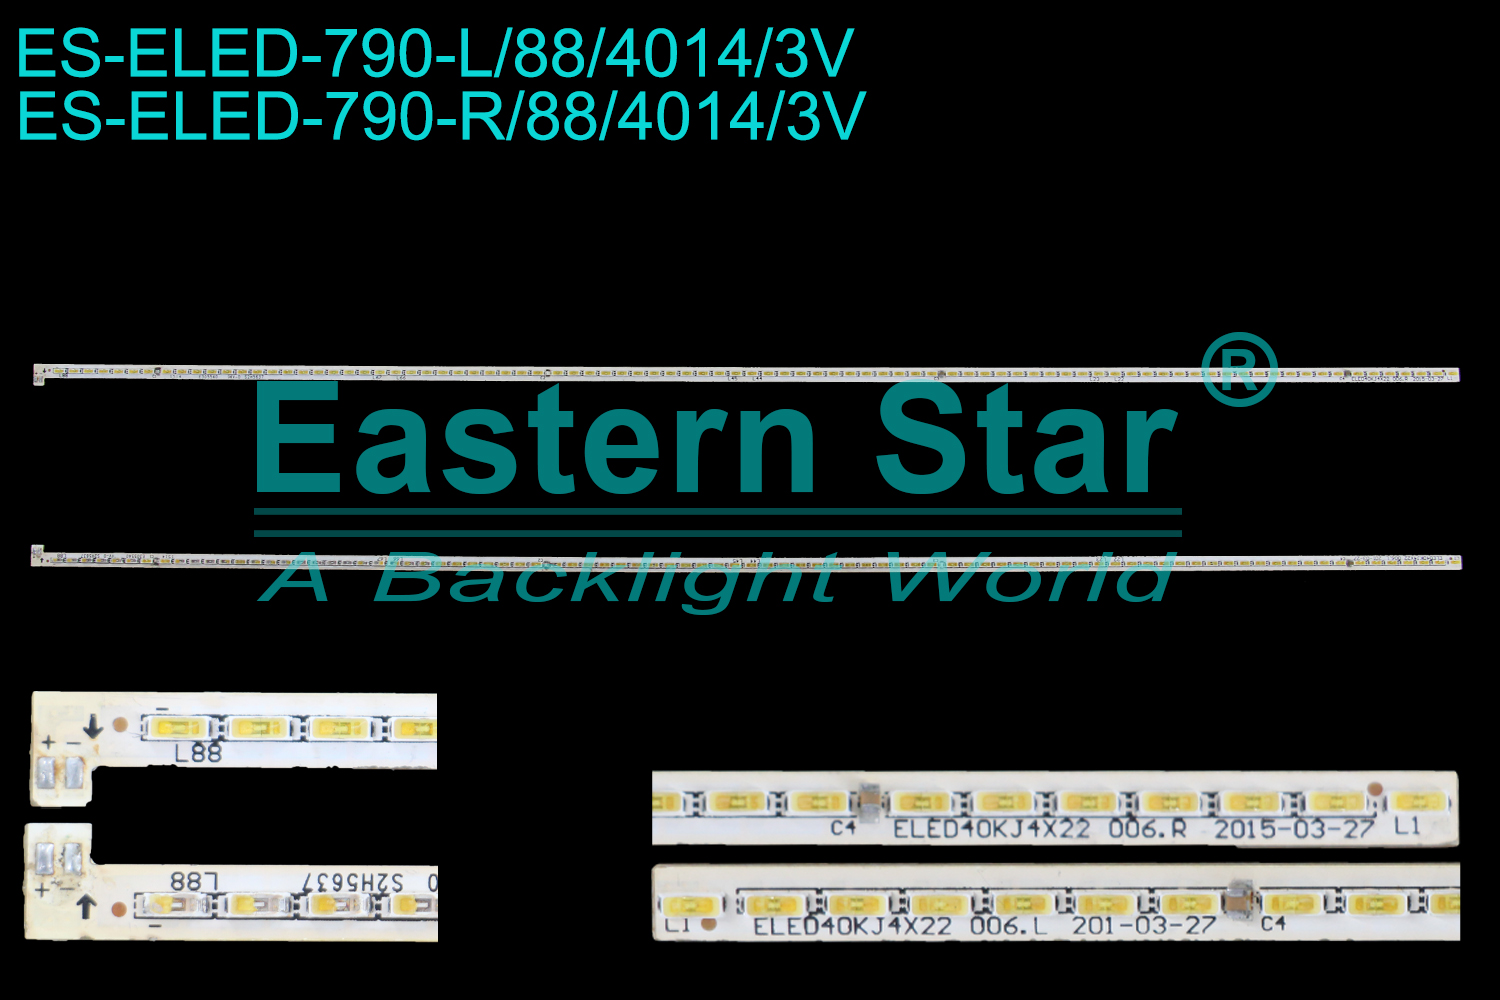 ES-ELED-790 ELED/EDGE TV backlight use for 40'' L:ELED40KJ4X22 006.L  R:ELED40KJ4X22 006.R LED STRIPS(2)